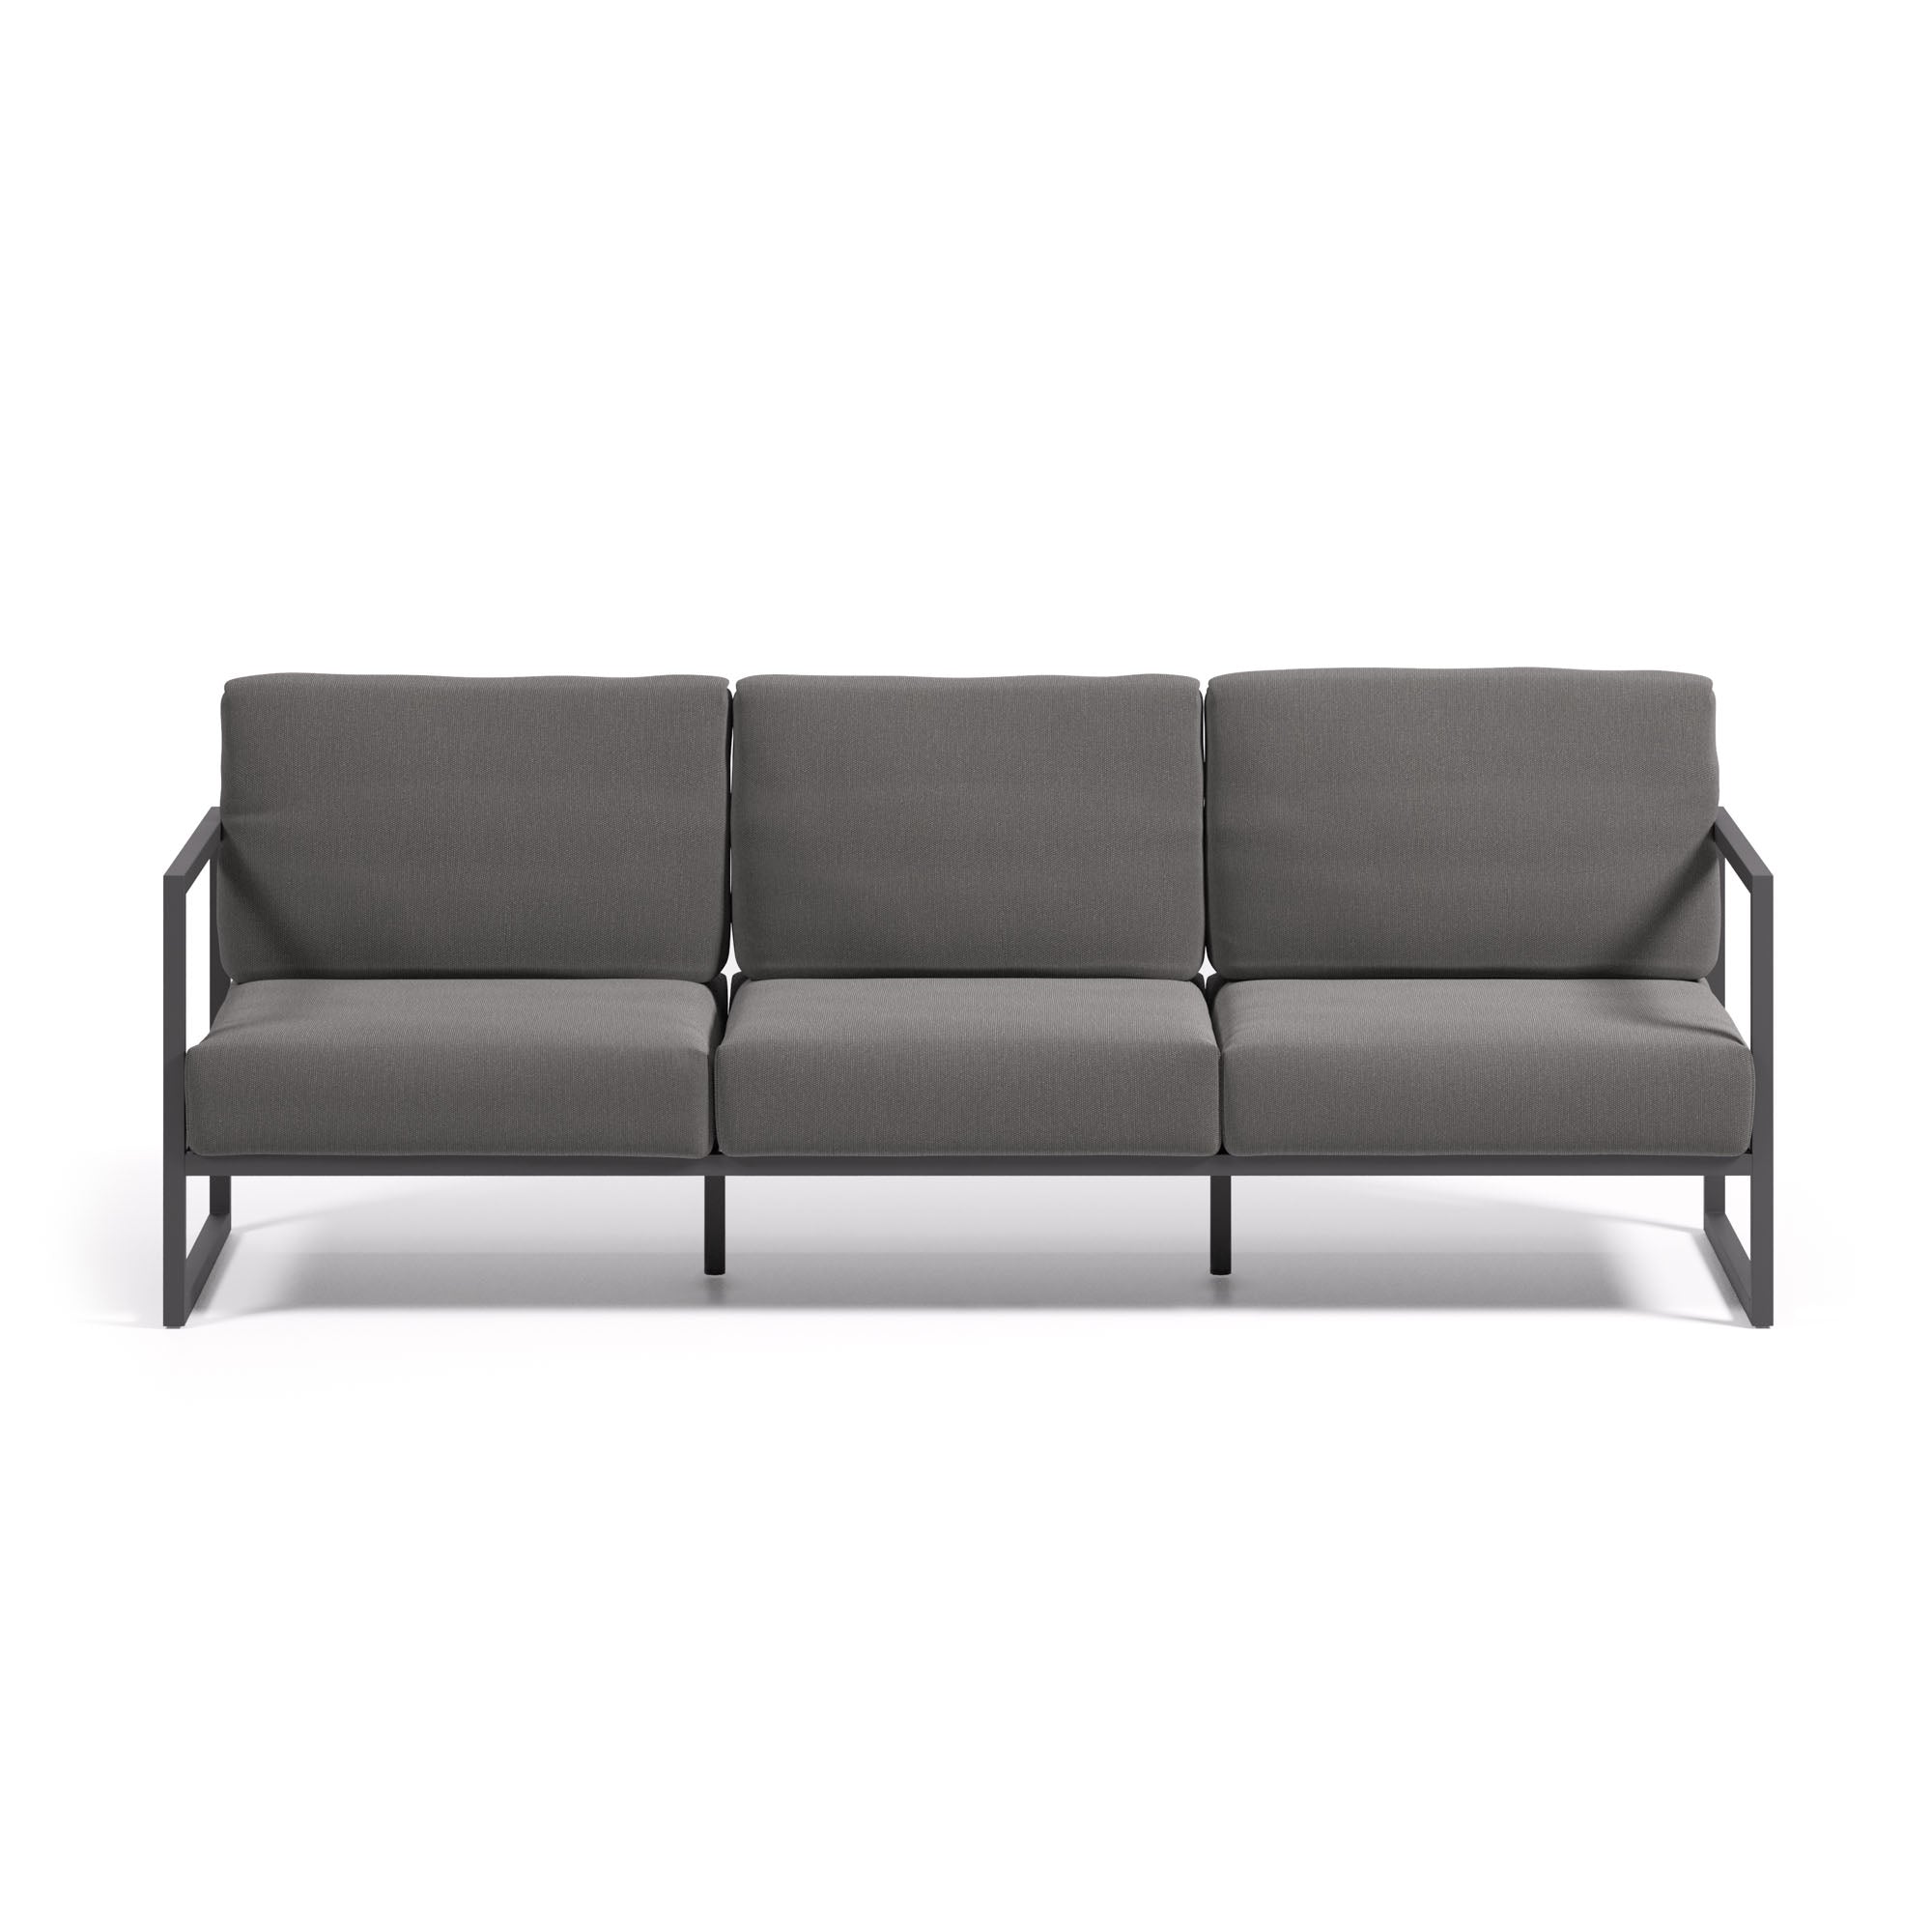 Comova 100% kültéri 3 személyes kanapé sötétszürke és fekete alumíniumból, 222 cm, 222 cm